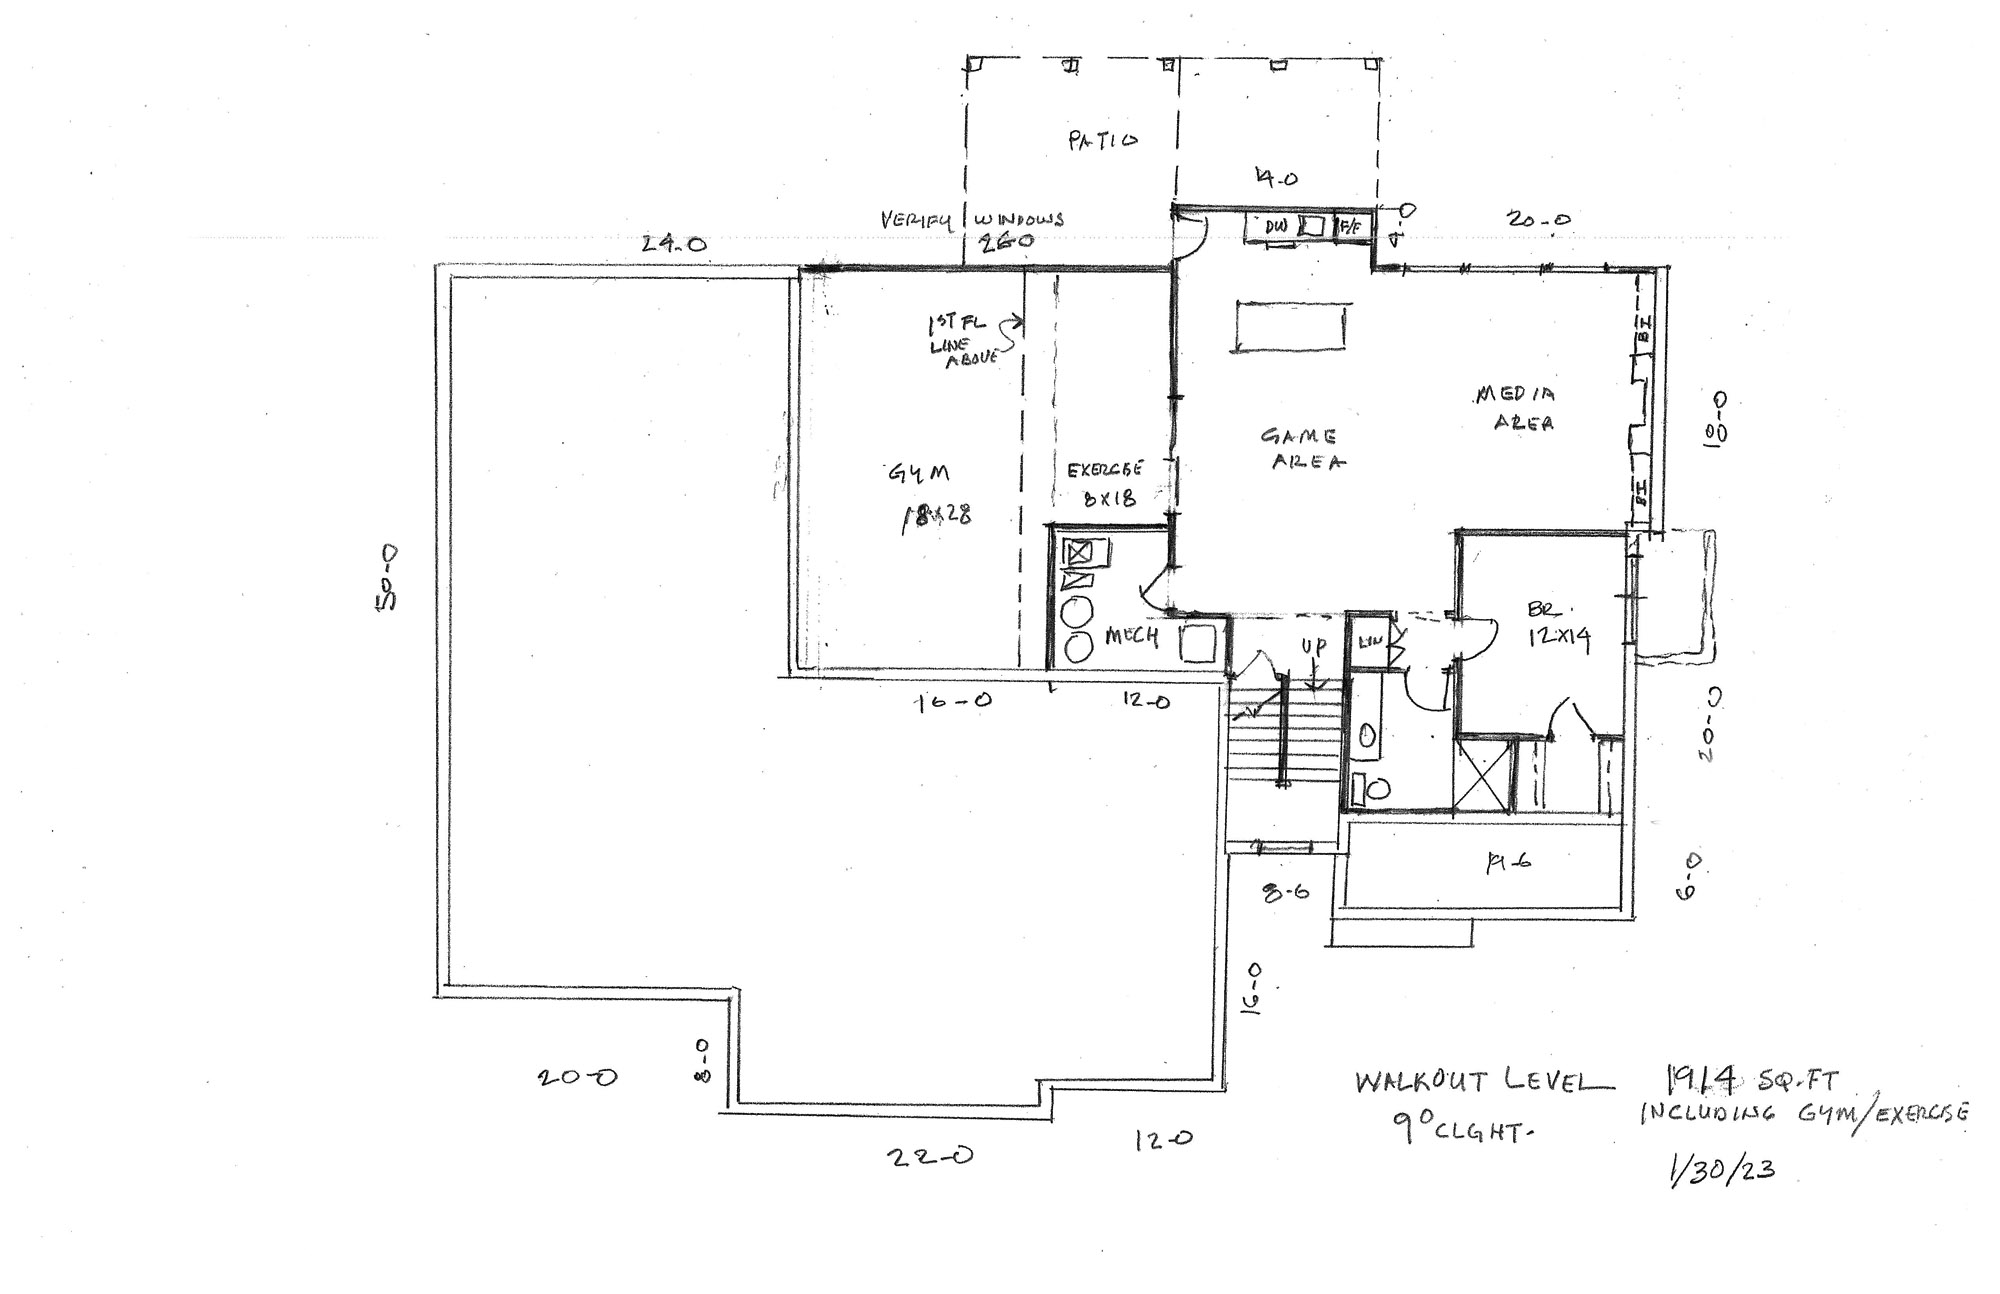 Michelle RV Garage Home Plan Walkout Level Floor Plan